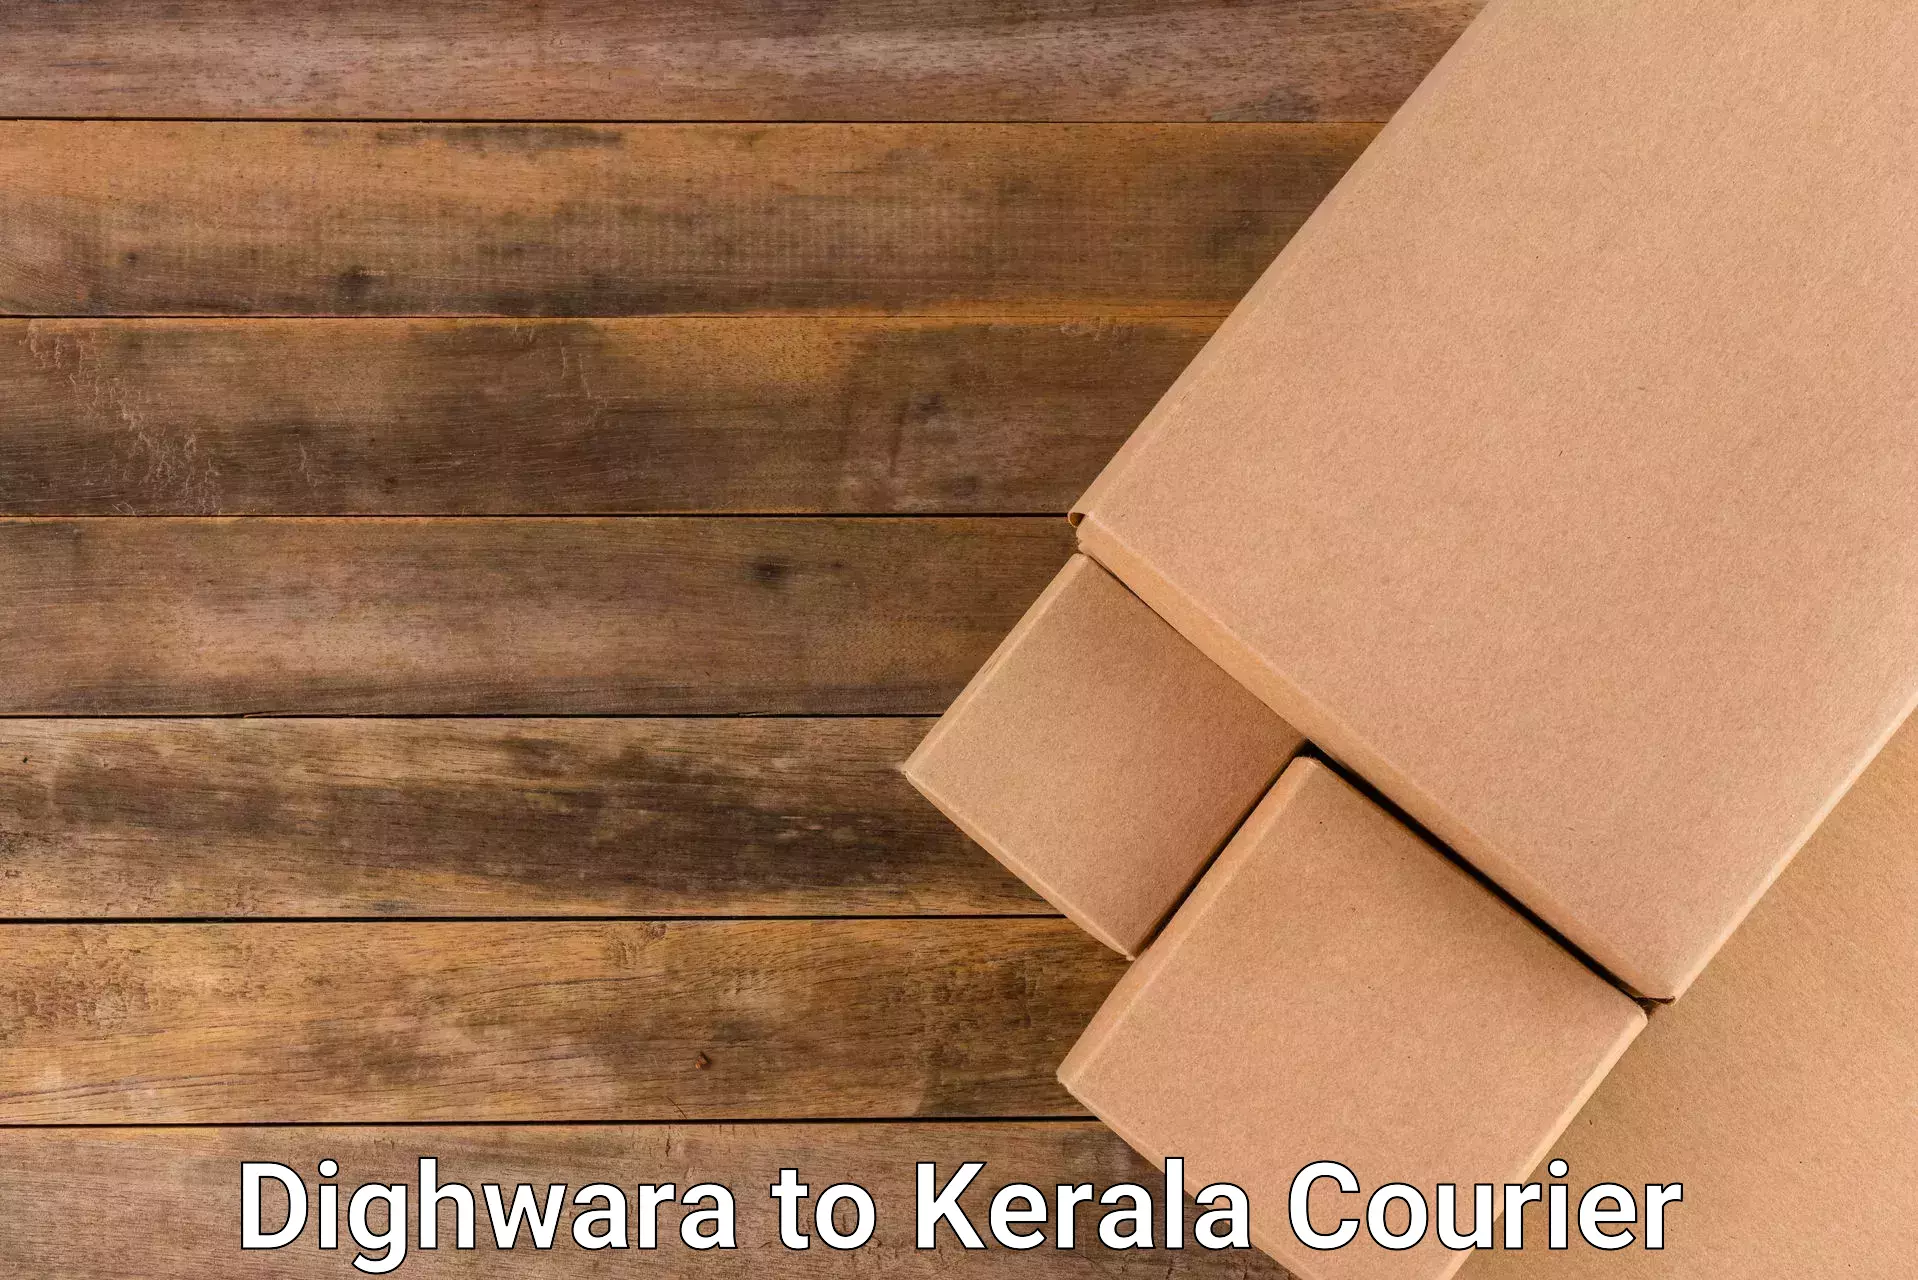 Express package transport Dighwara to Kerala